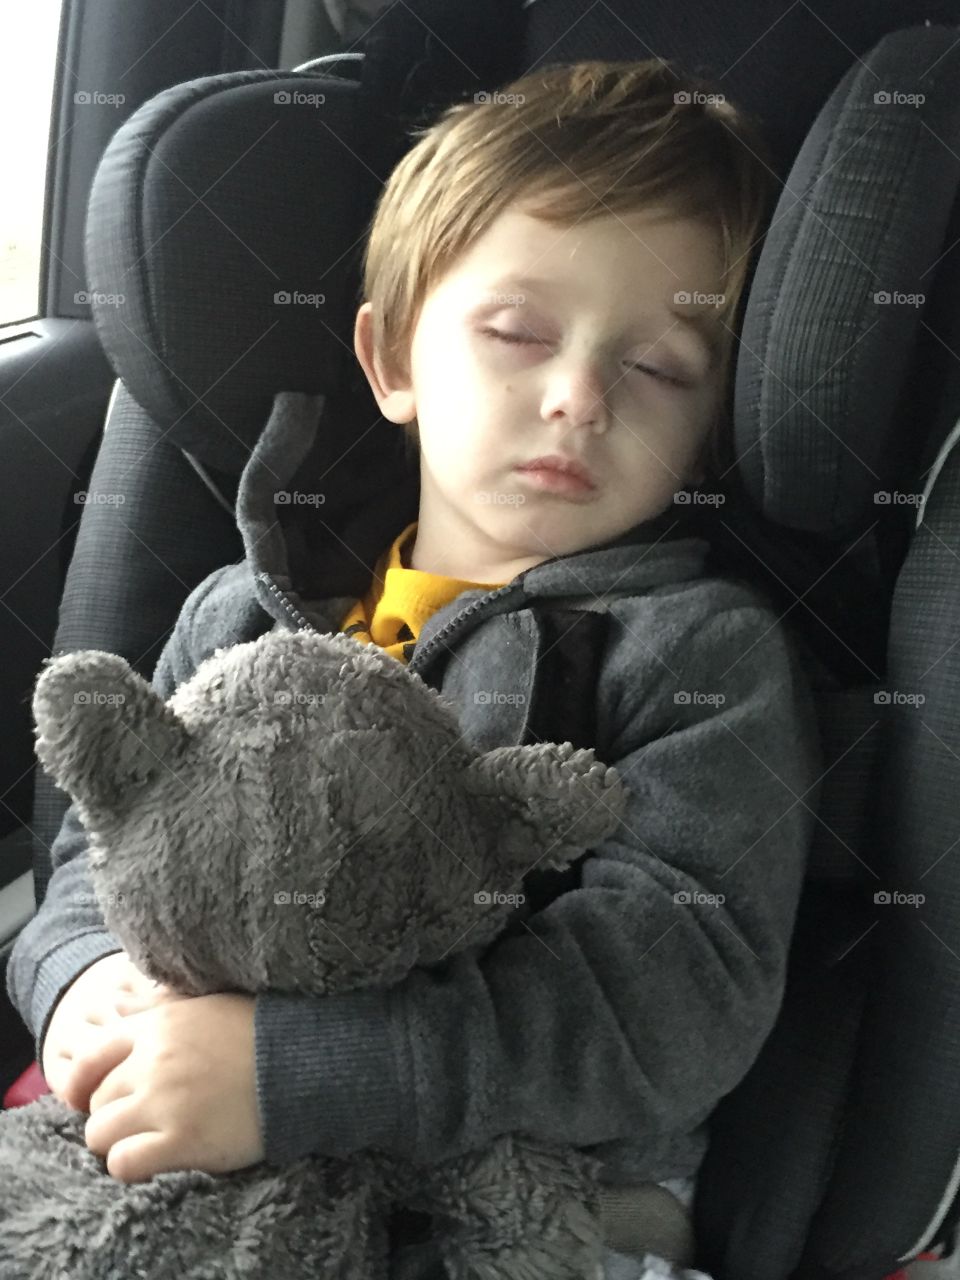 Boy sleeping in the car with teddy bear